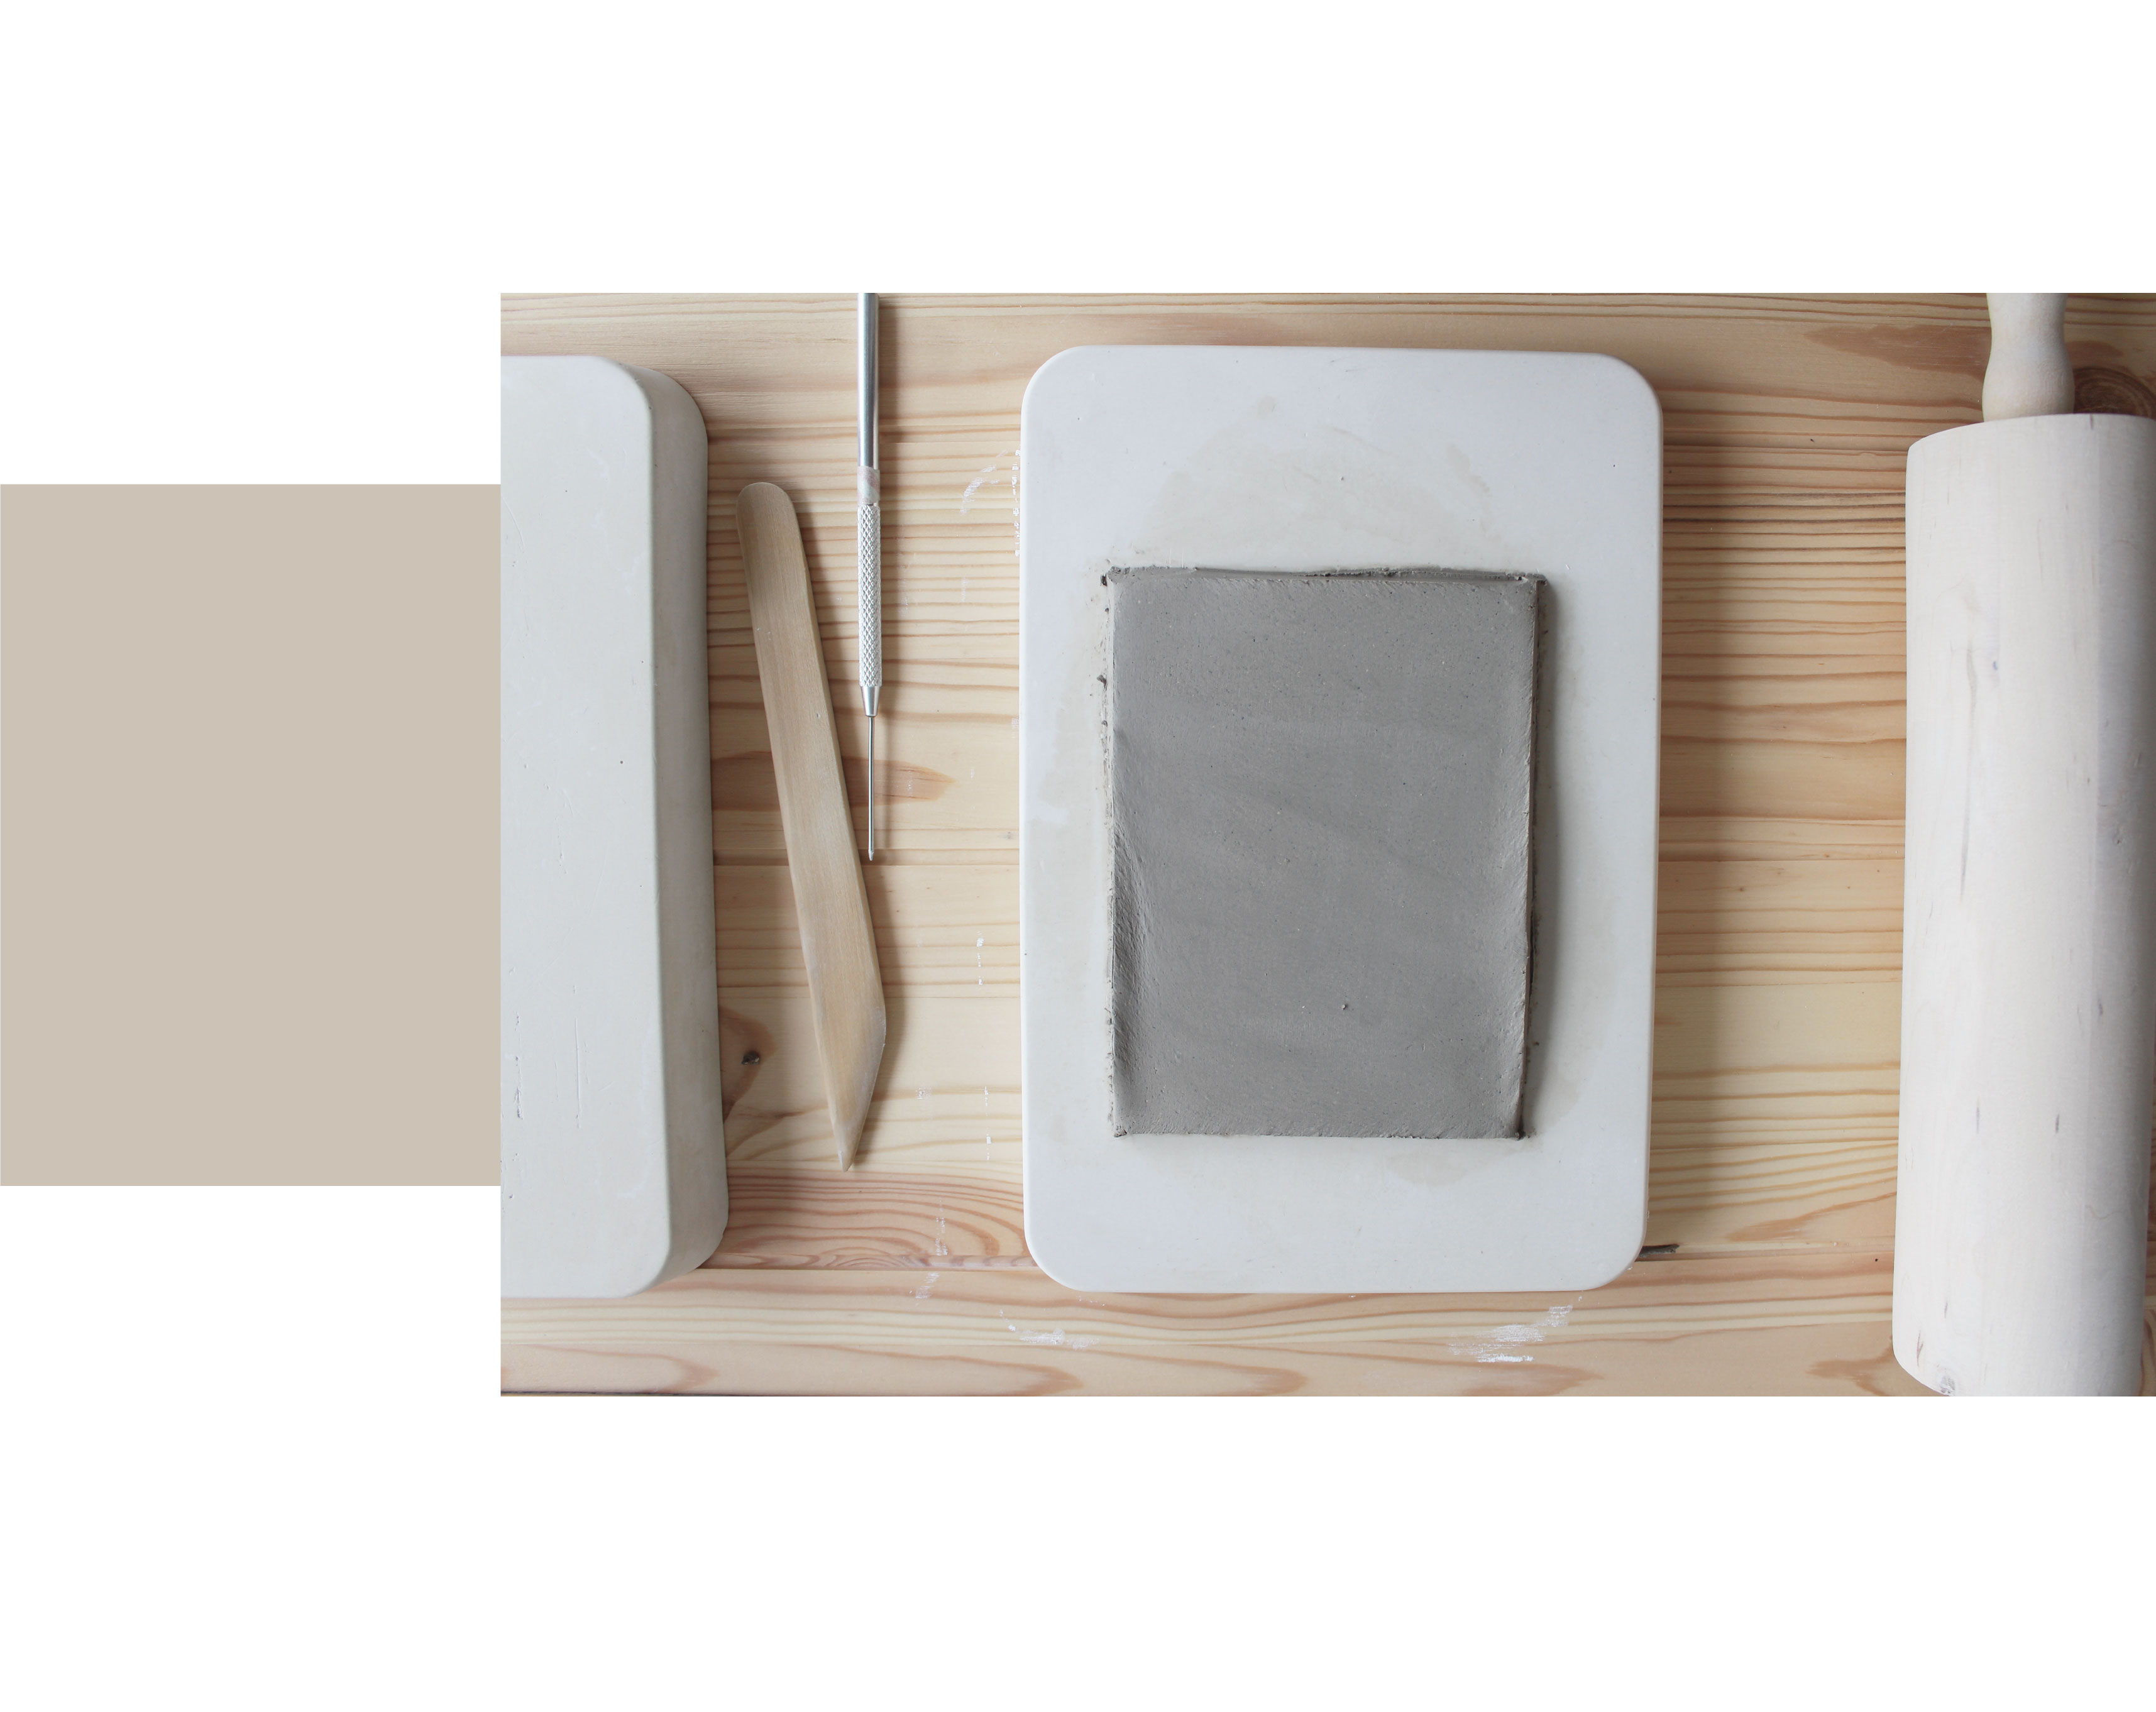 træ skrivebord med gips rektangel flagermus, en træ kagerulle, keramik værktøjer og en plade af grå ler rullet ind i en flad rektangel.